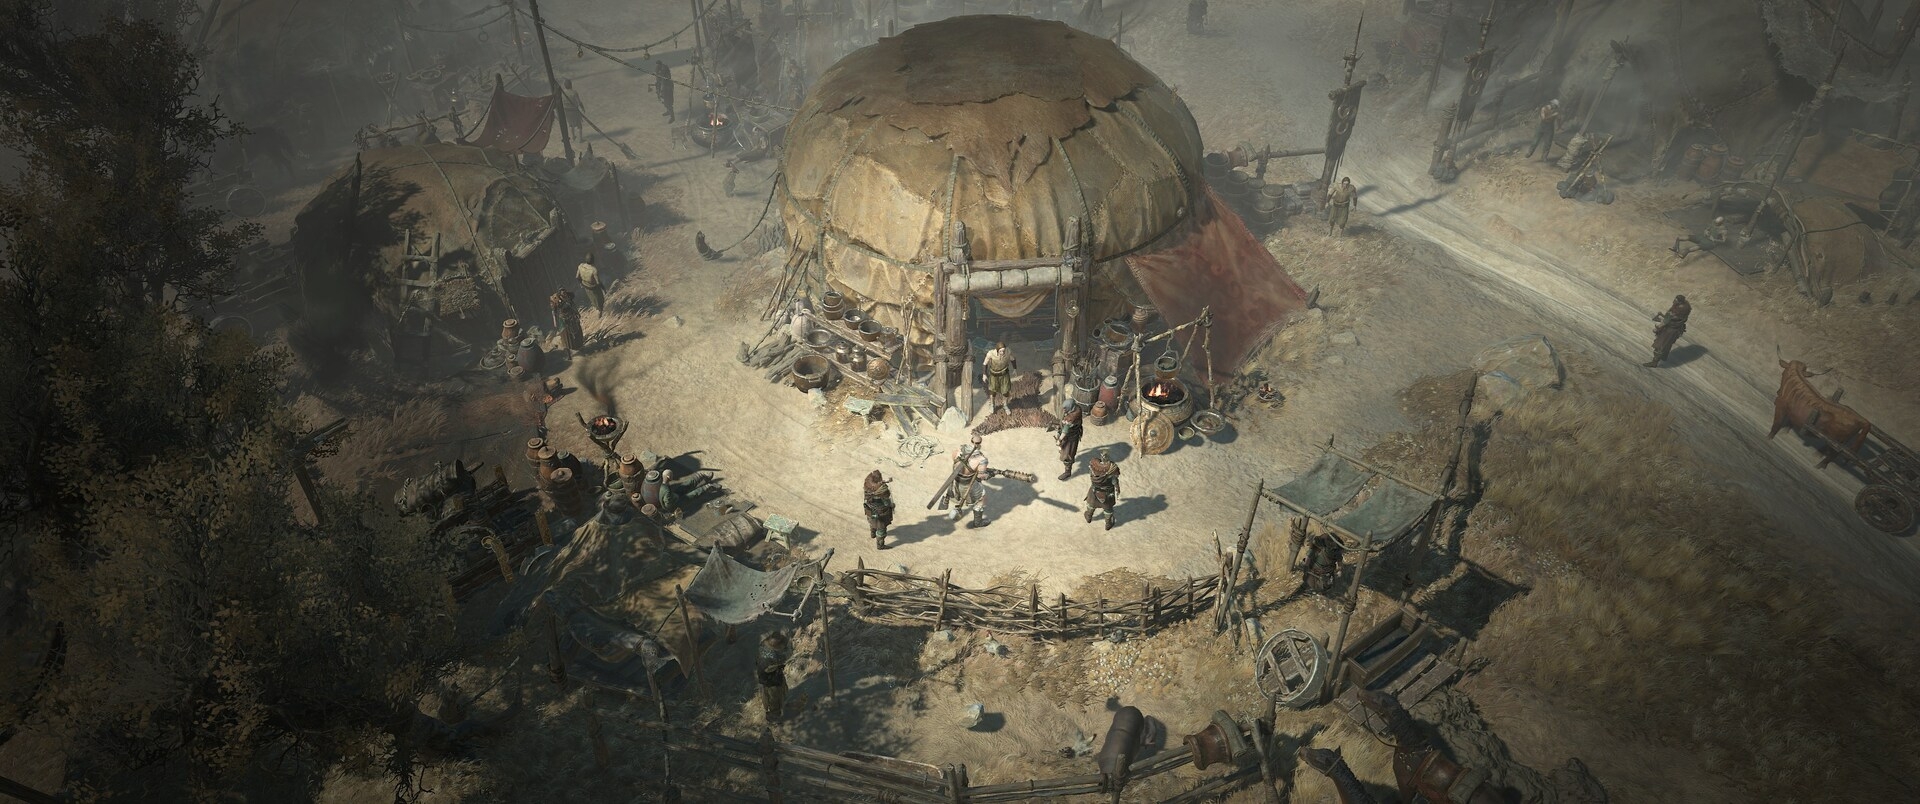 Скриншот из игры Diablo IV под номером 7